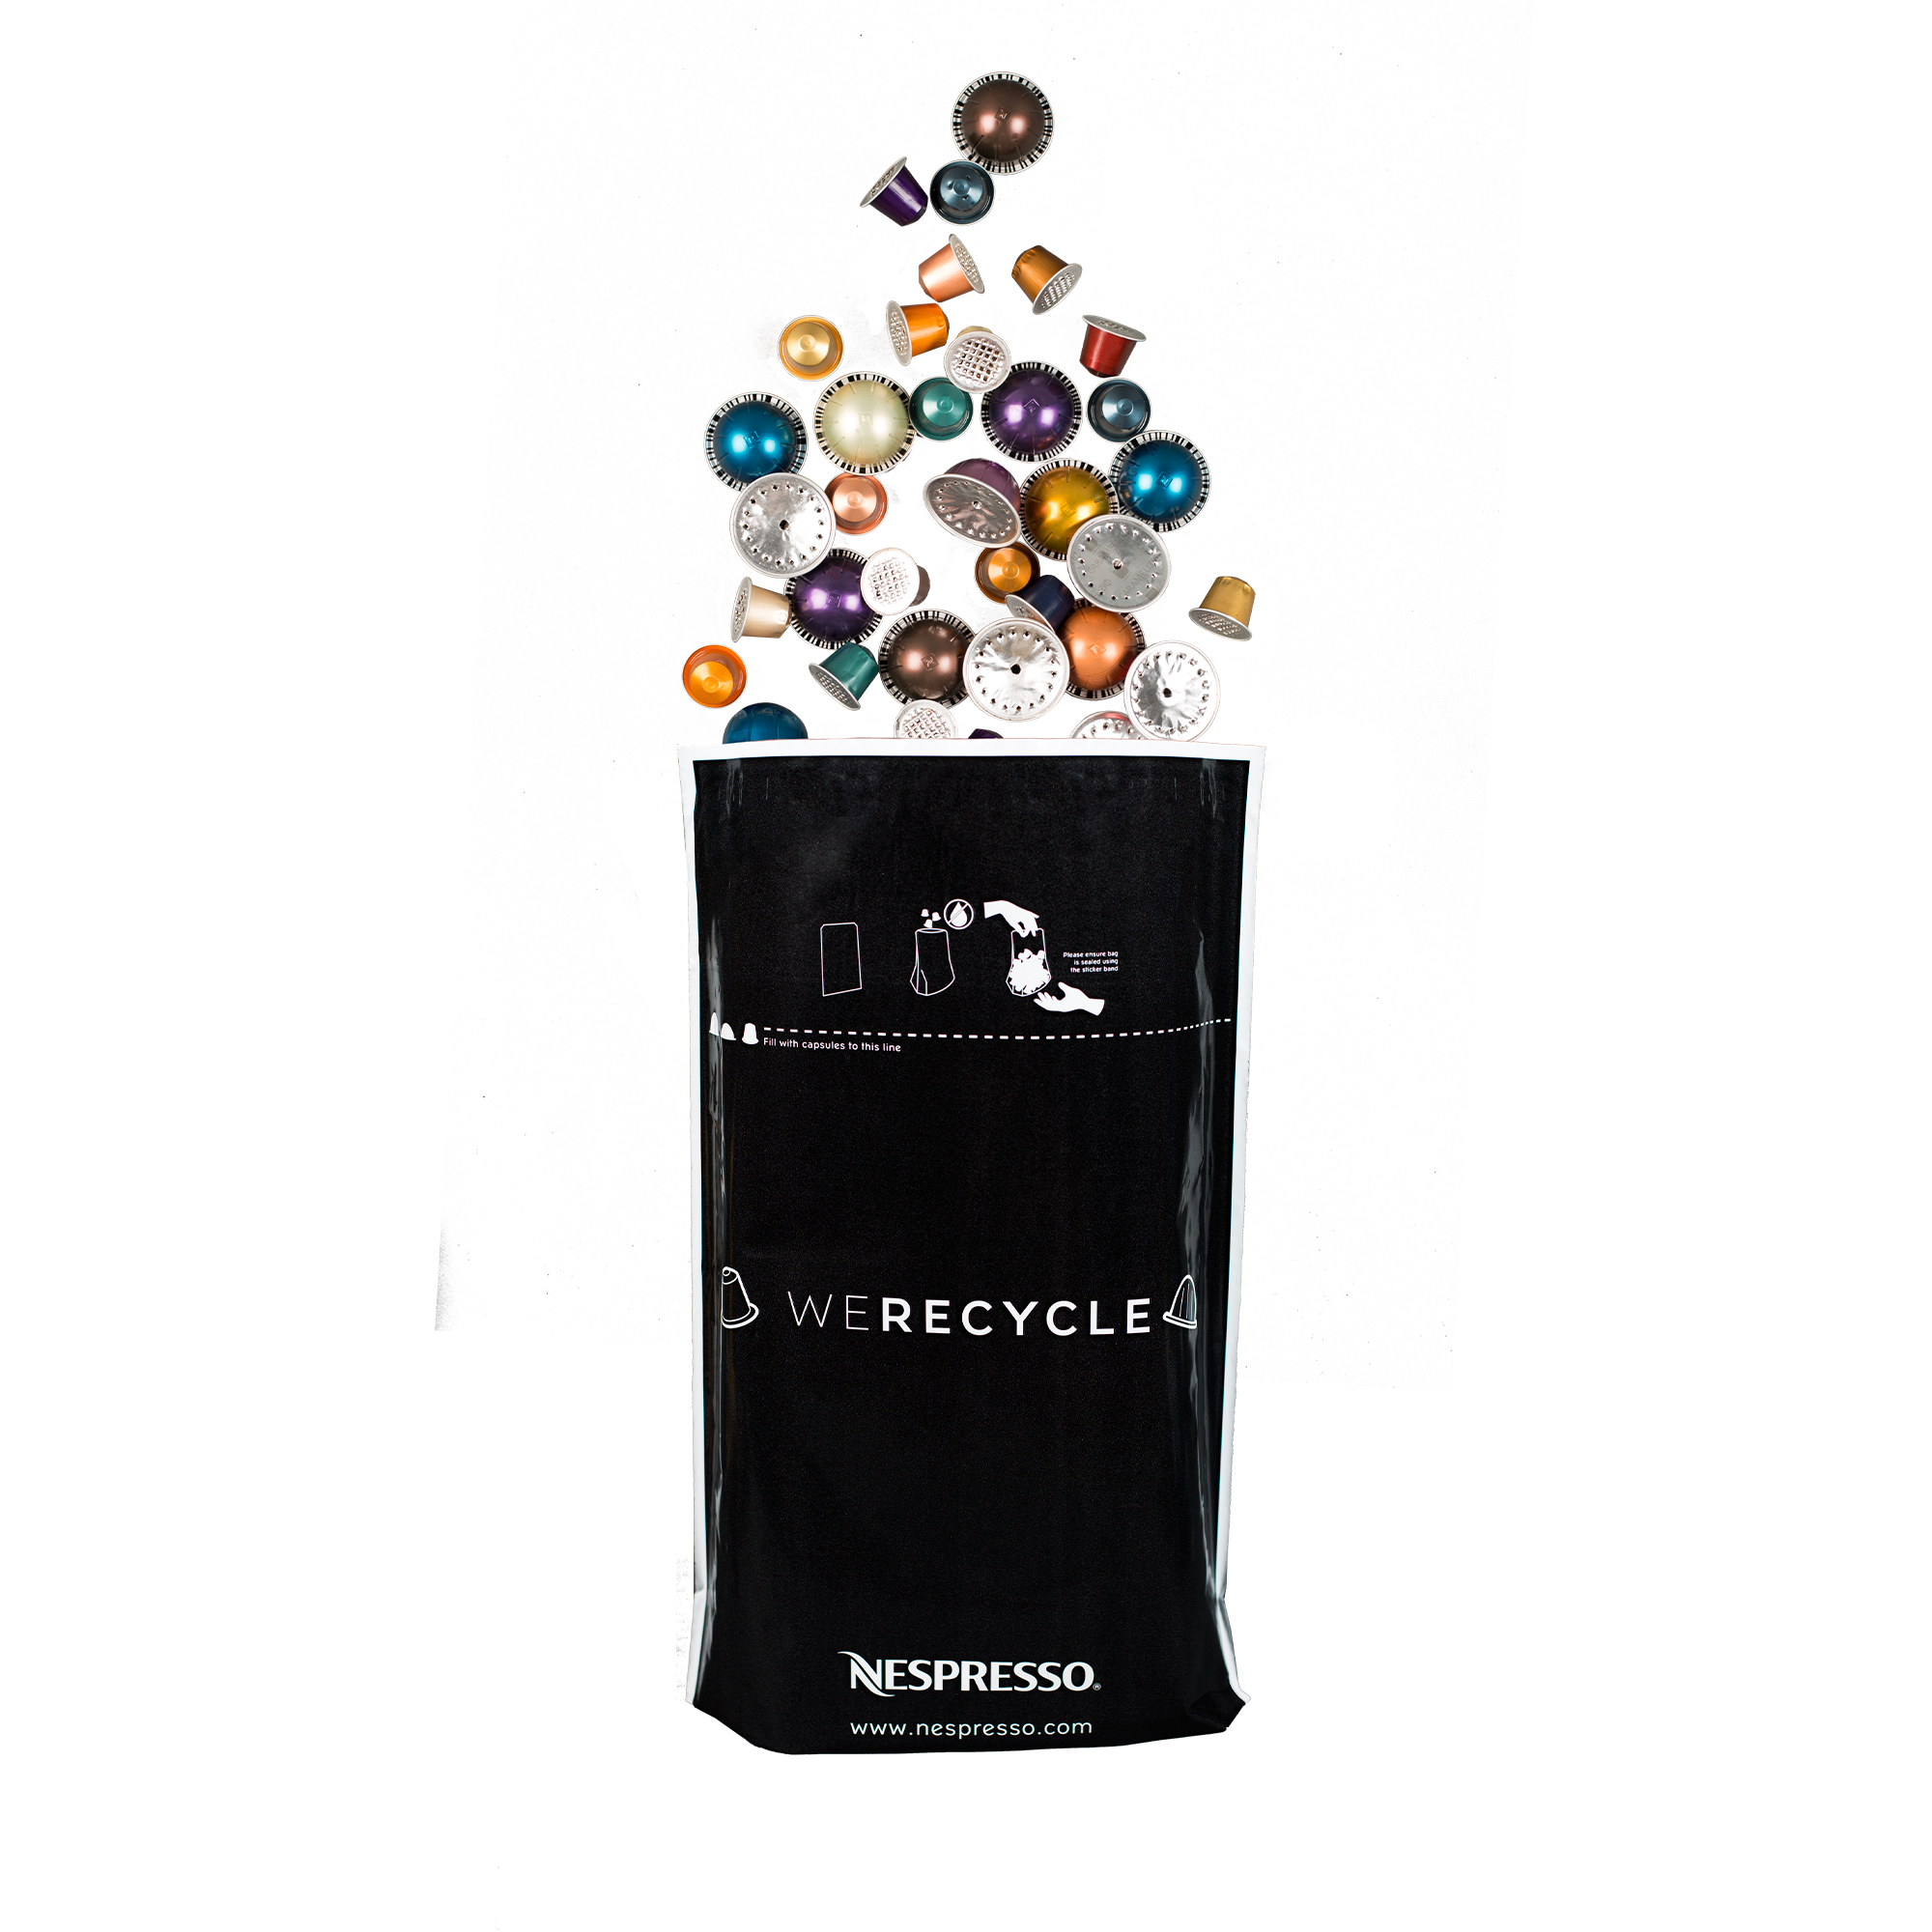 Nespresso Recycling Bag 